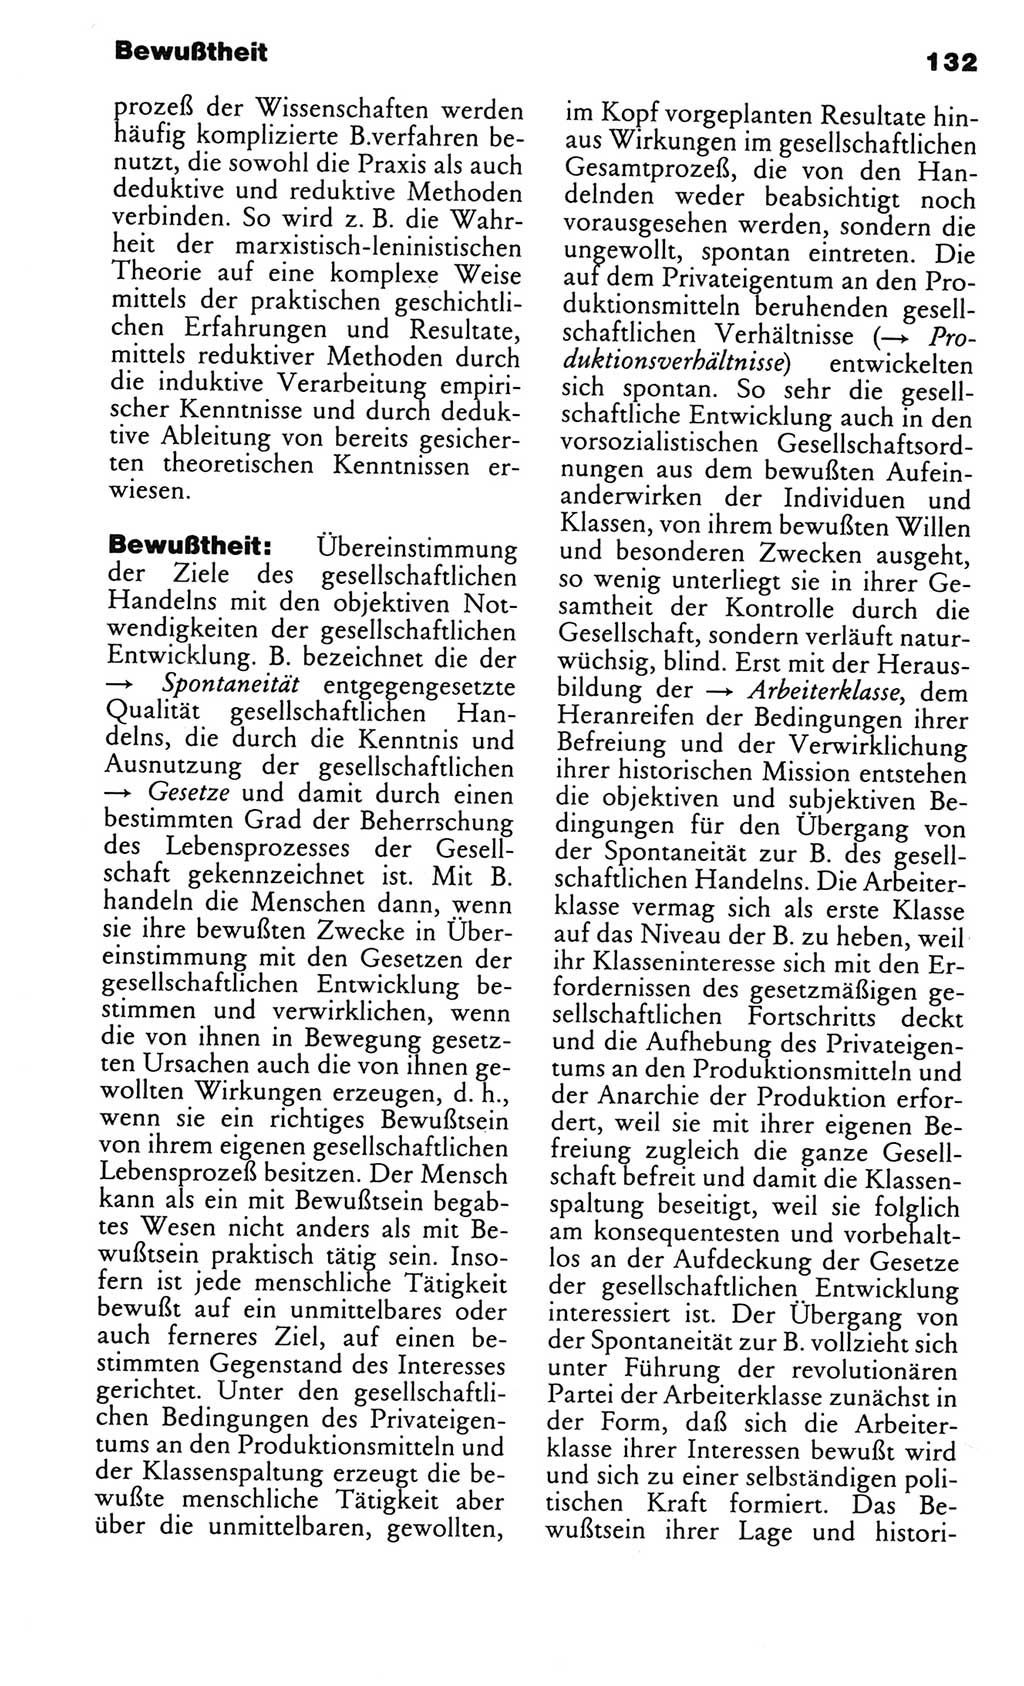 Kleines politisches Wörterbuch [Deutsche Demokratische Republik (DDR)] 1983, Seite 132 (Kl. pol. Wb. DDR 1983, S. 132)